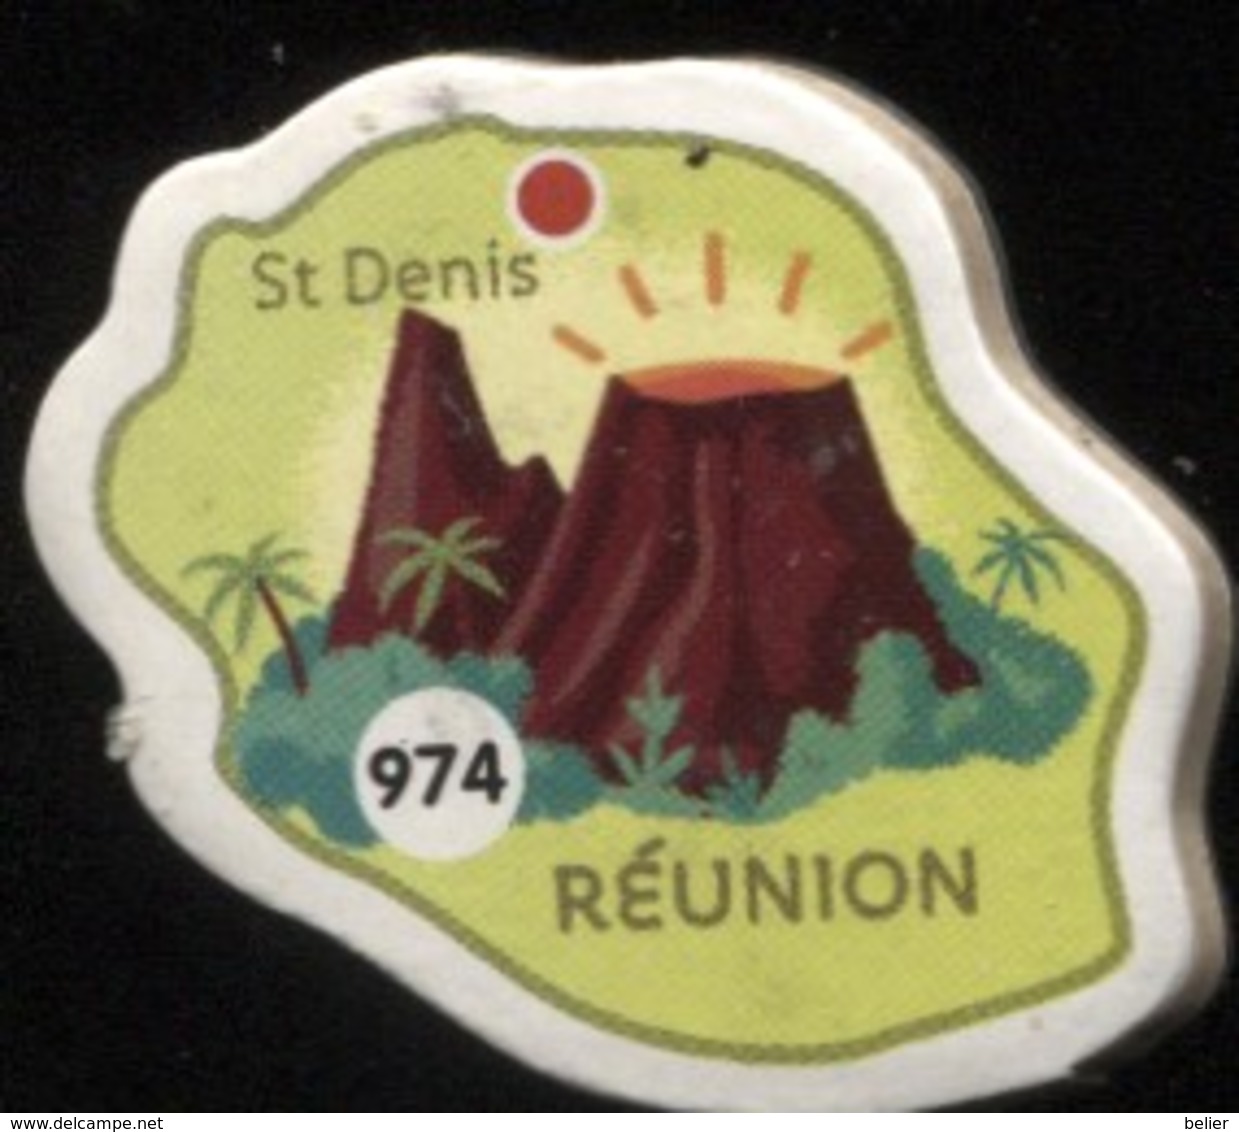 MAGNET REUNION ST DENIS N° 974 - Magnets